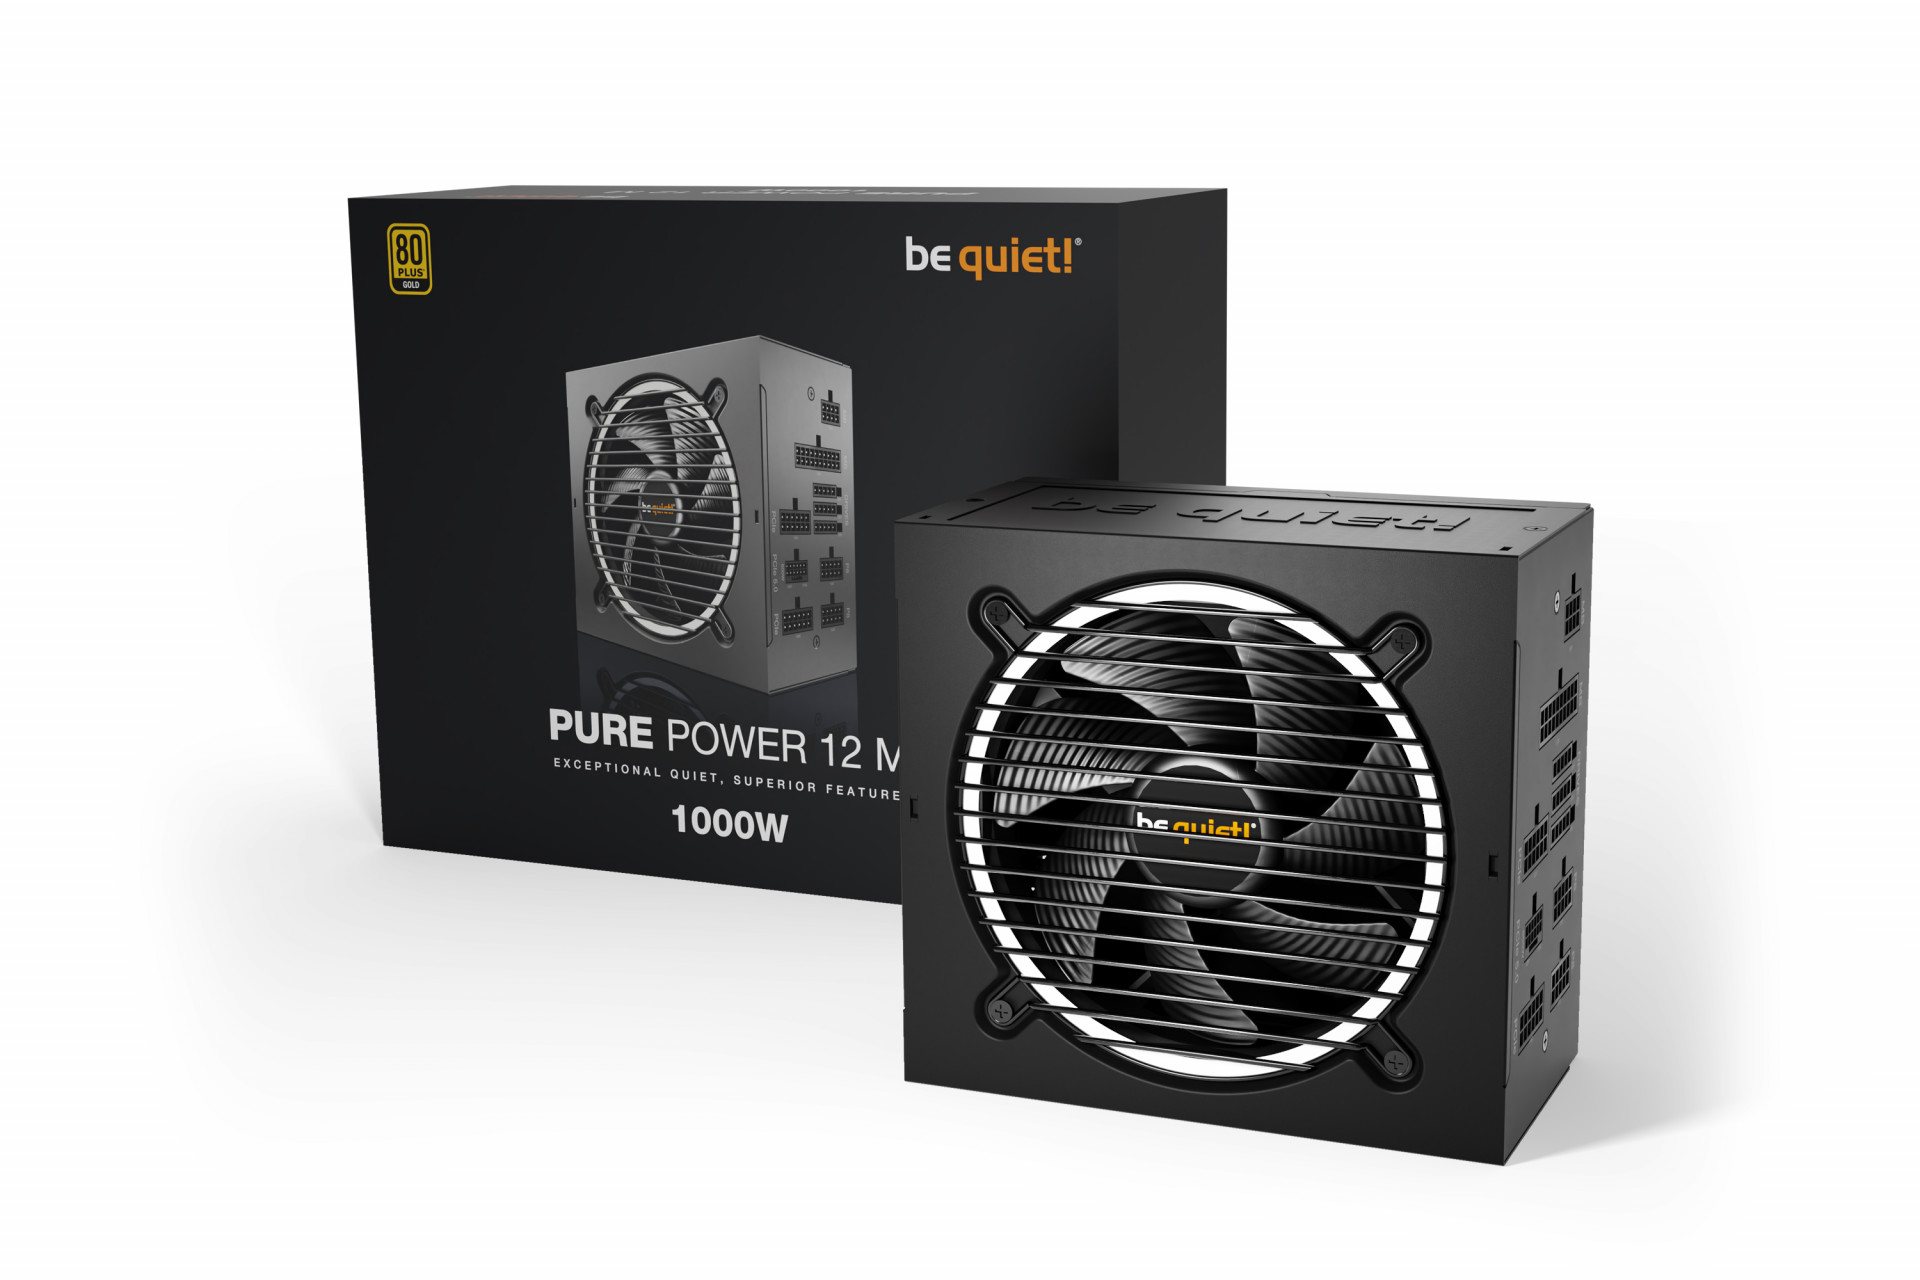 be quiet! выпускает Pure Power 12 M: модульный ATX 3.0 блок питания и термопасту DC2